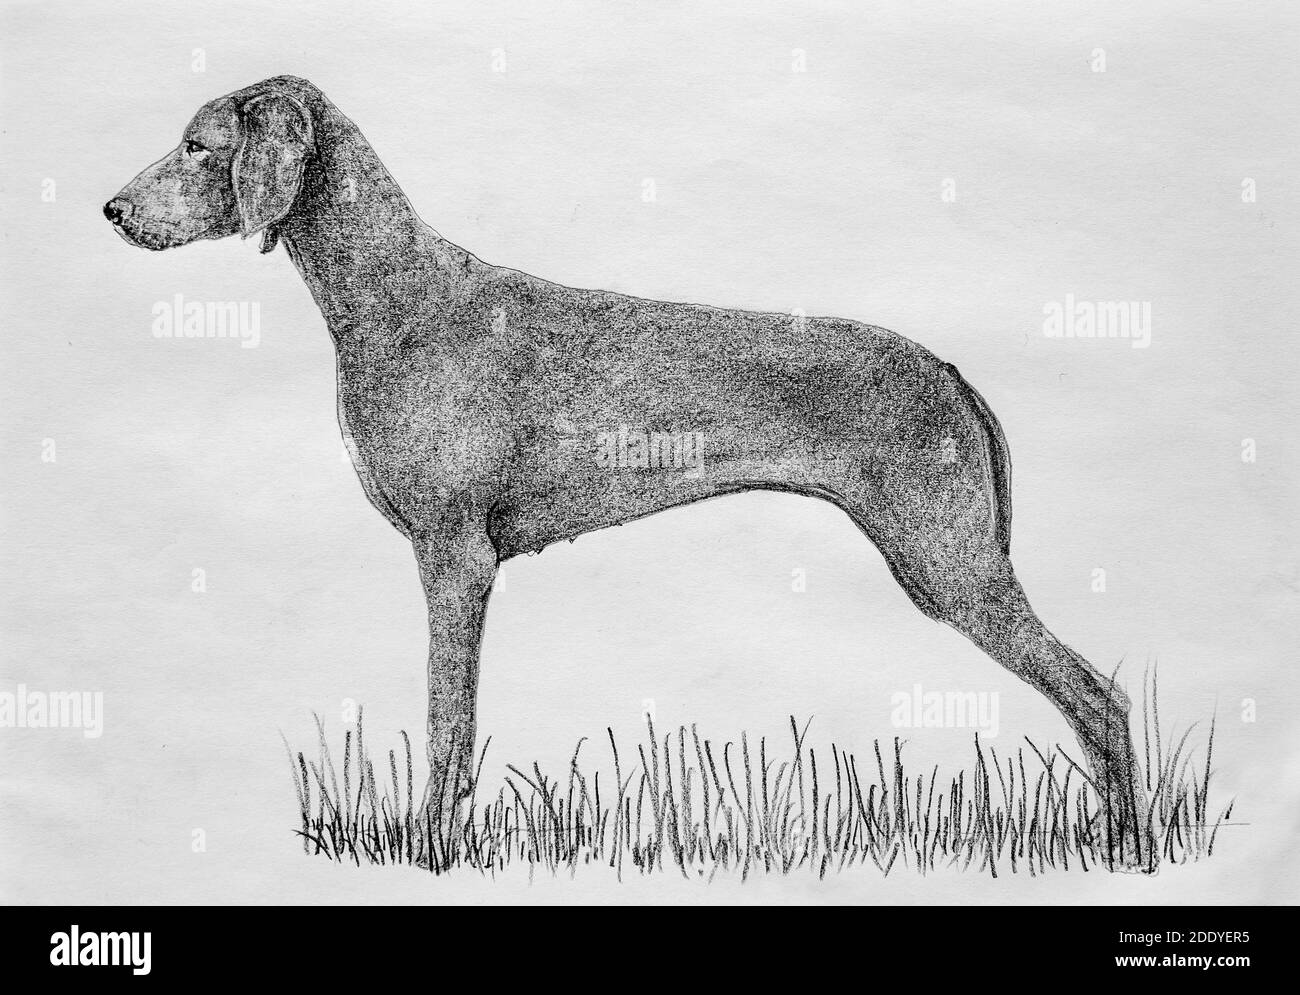 Ein Hund mit Bleistift auf Papier gezeichnet. Alte Archivressource  Stockfotografie - Alamy